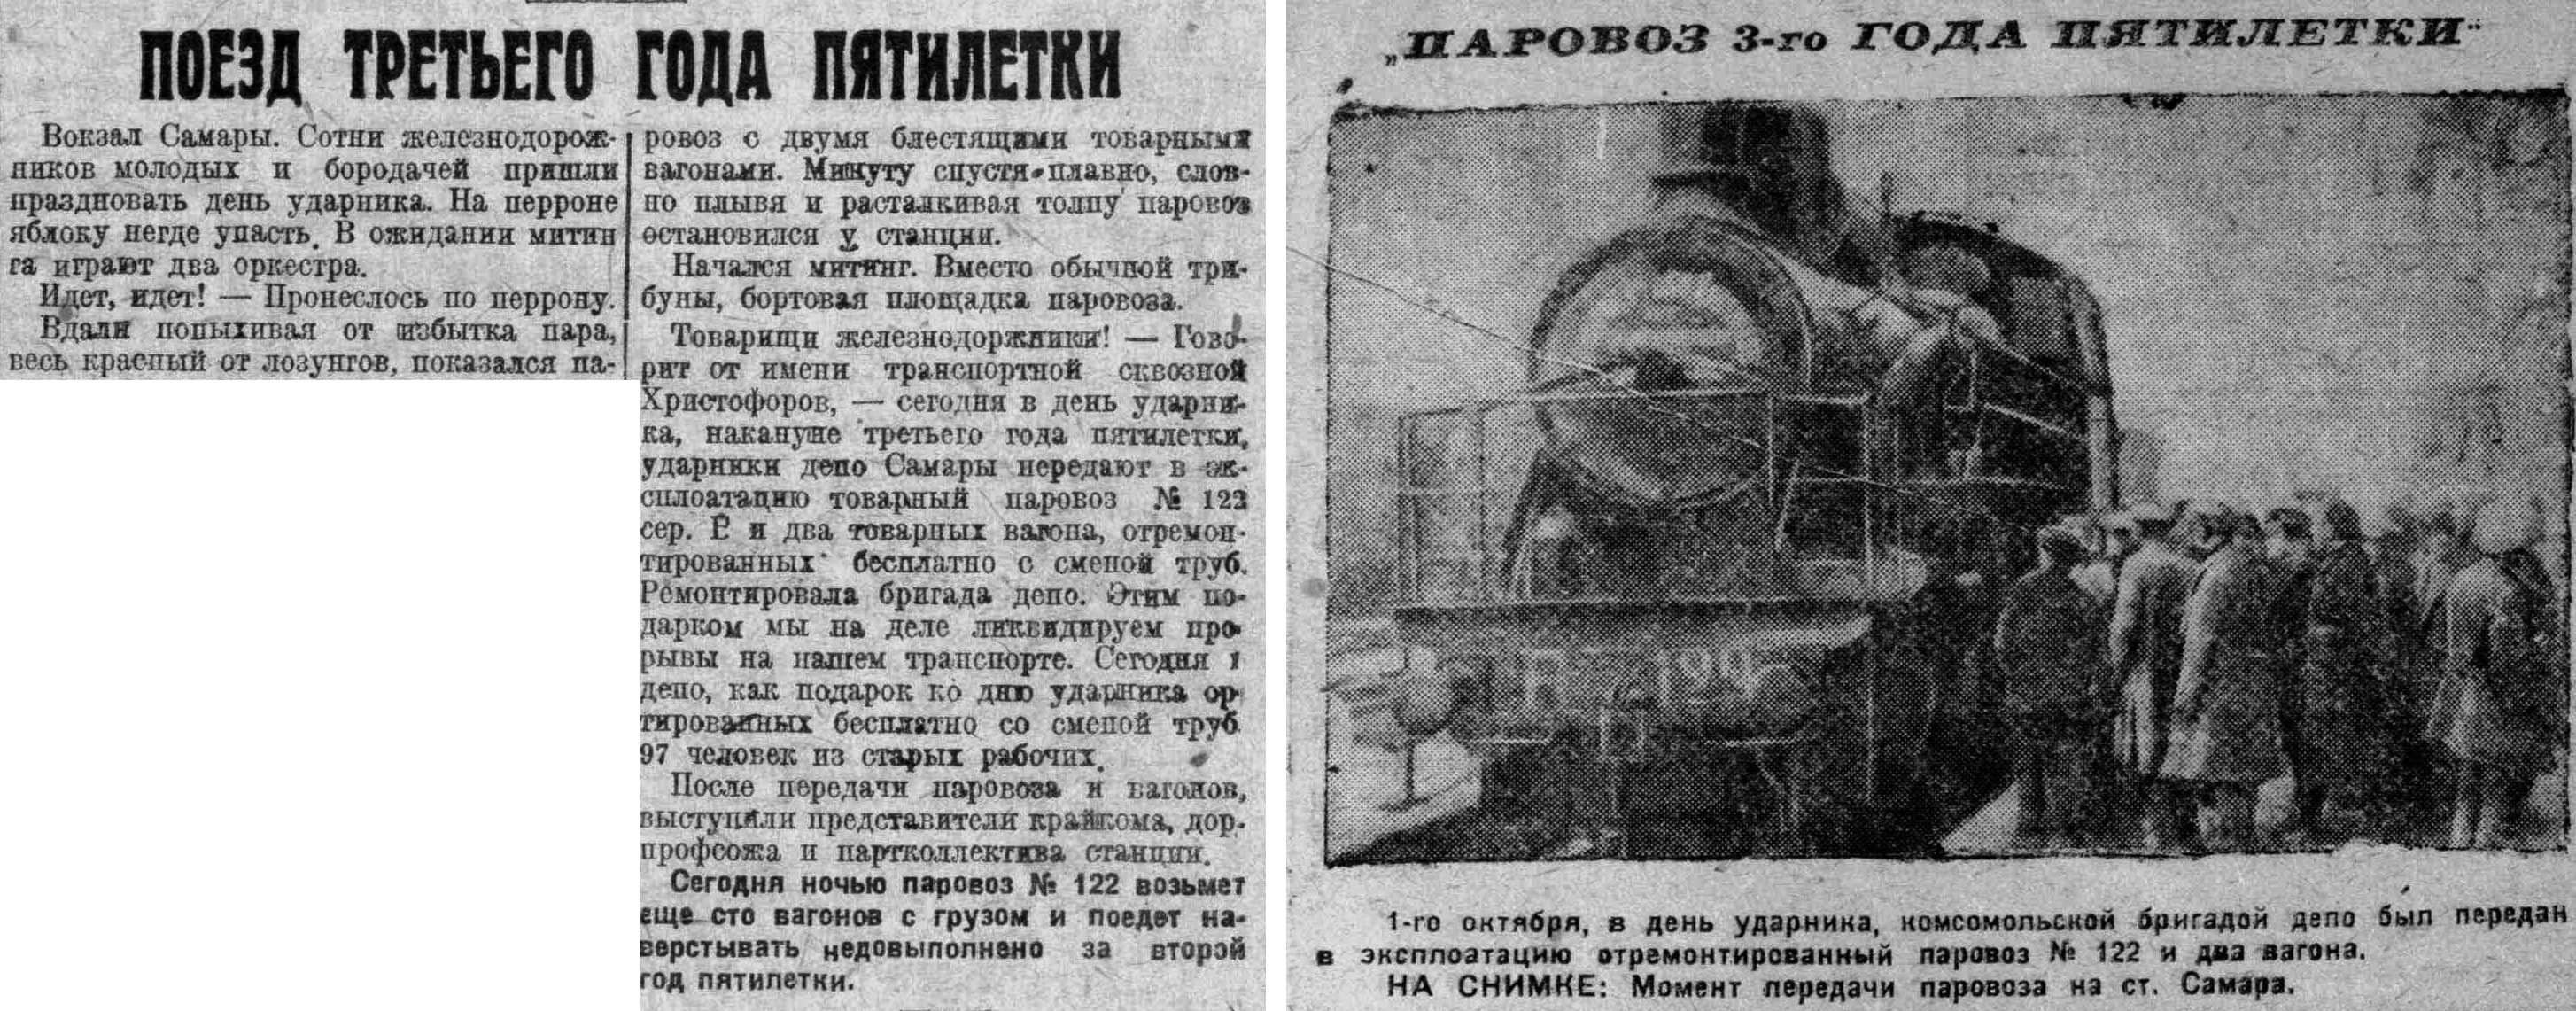 3-й год Пятилетки-ФОТО-16-ВКа-1930-10-02-поезд 3-го года Пятилетки-min-min